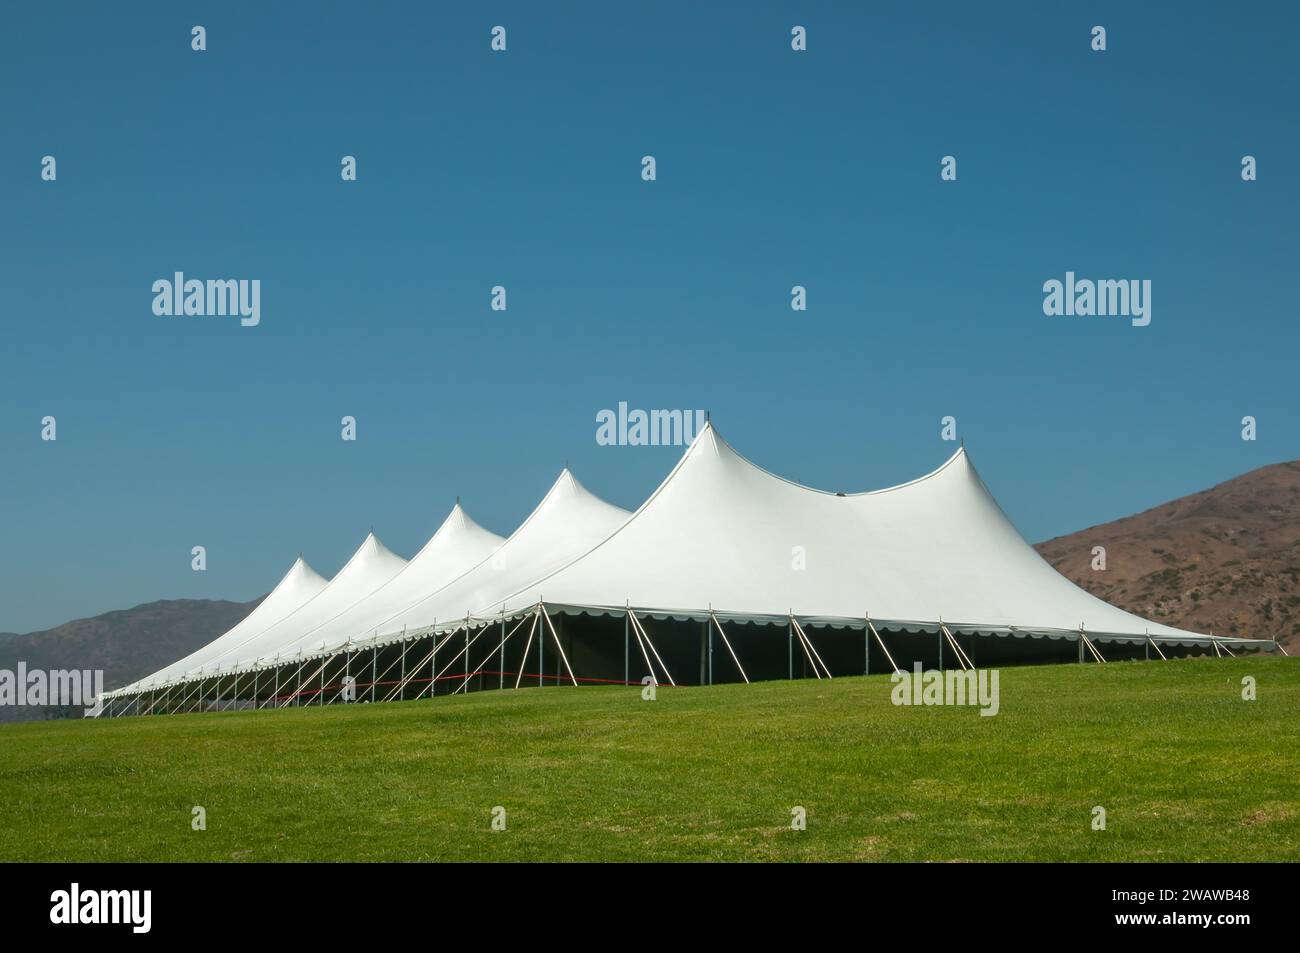 Großes weißes Zelt für Veranstaltungen in einem grünen Feld, mit Bergen im Hintergrund Stockfoto